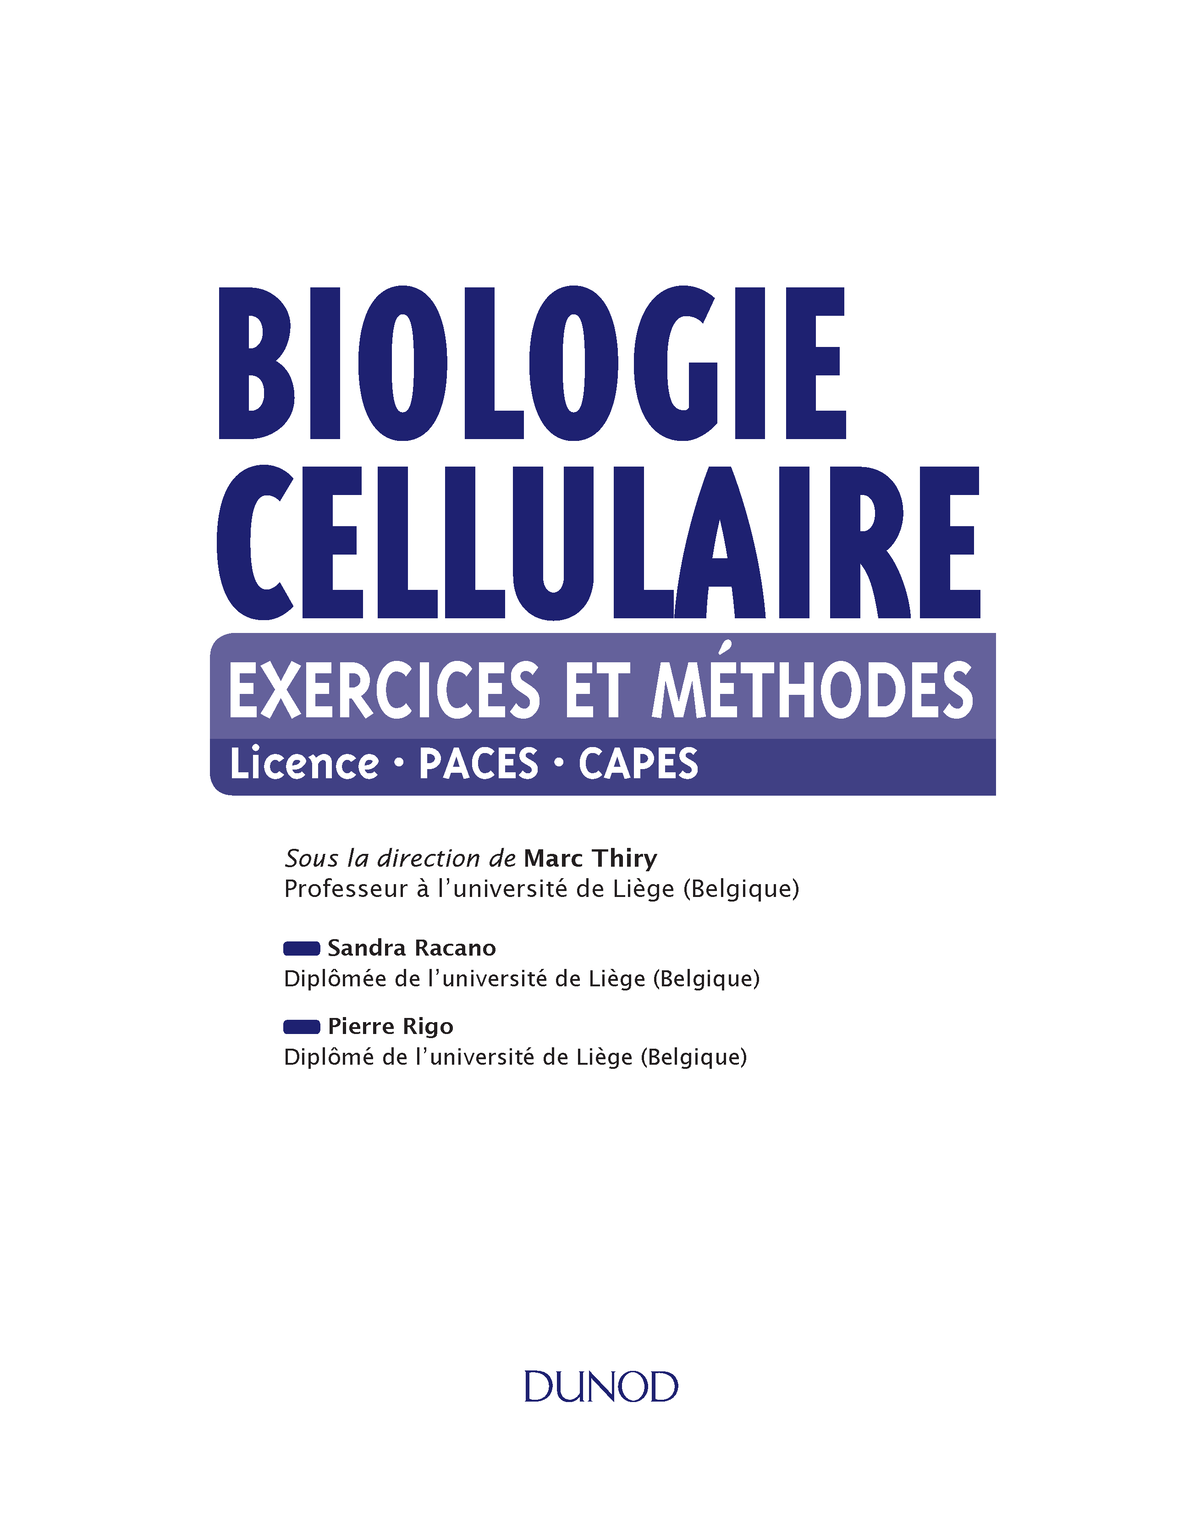 Extrait du livre du biologie cellulaire exercice et contrôle - BIOLOGIE ...